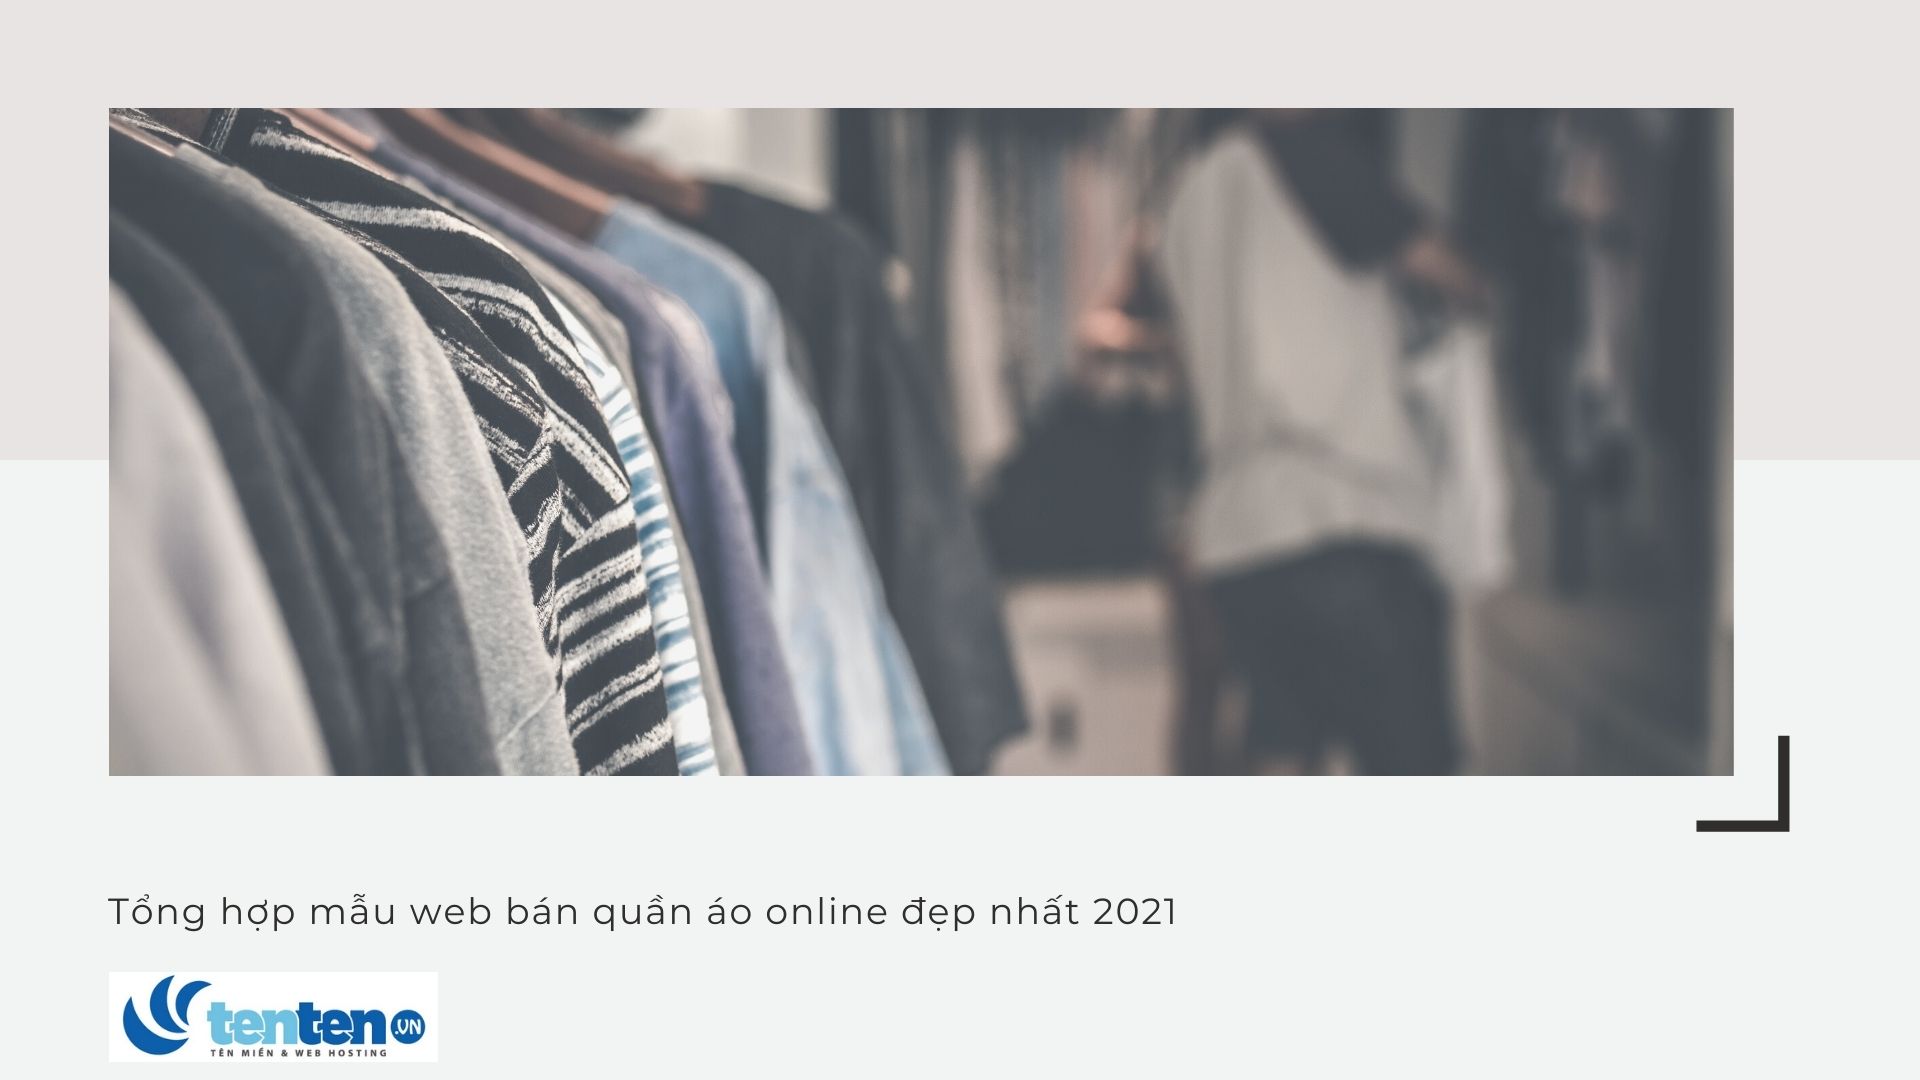 Tổng hợp mẫu web bán quần áo online đẹp nhất 2022